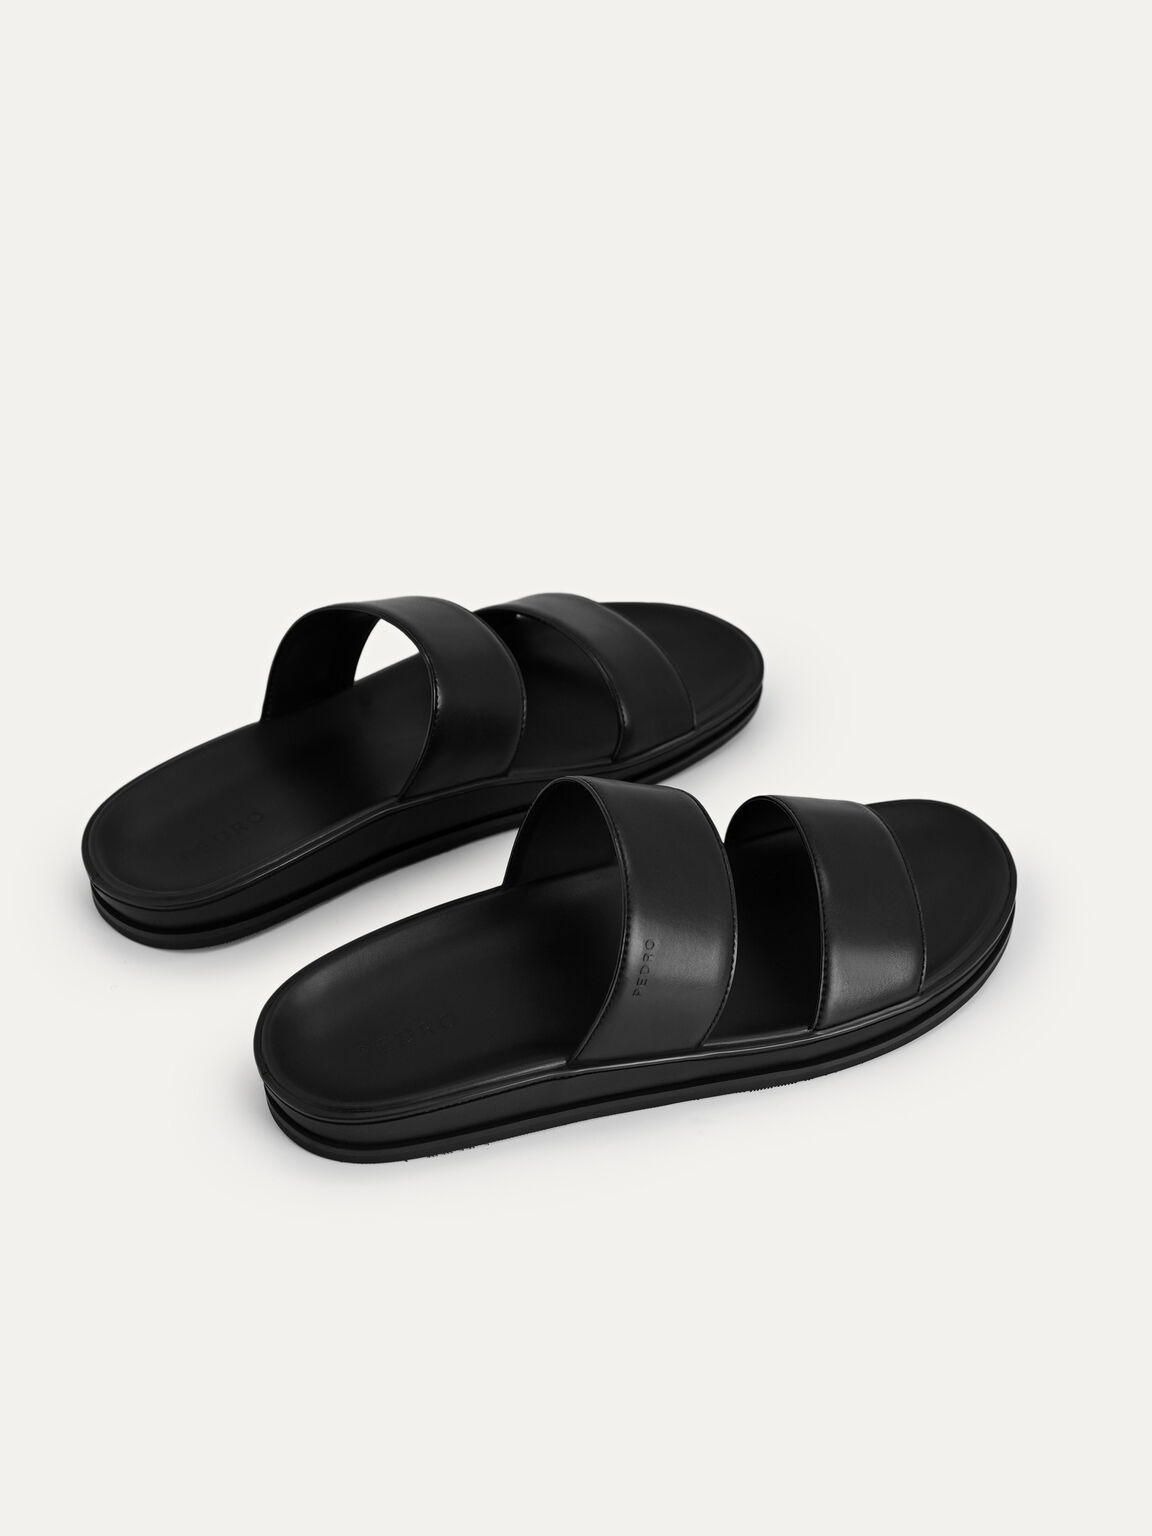 Monochrome Double Strap Sandals, Black